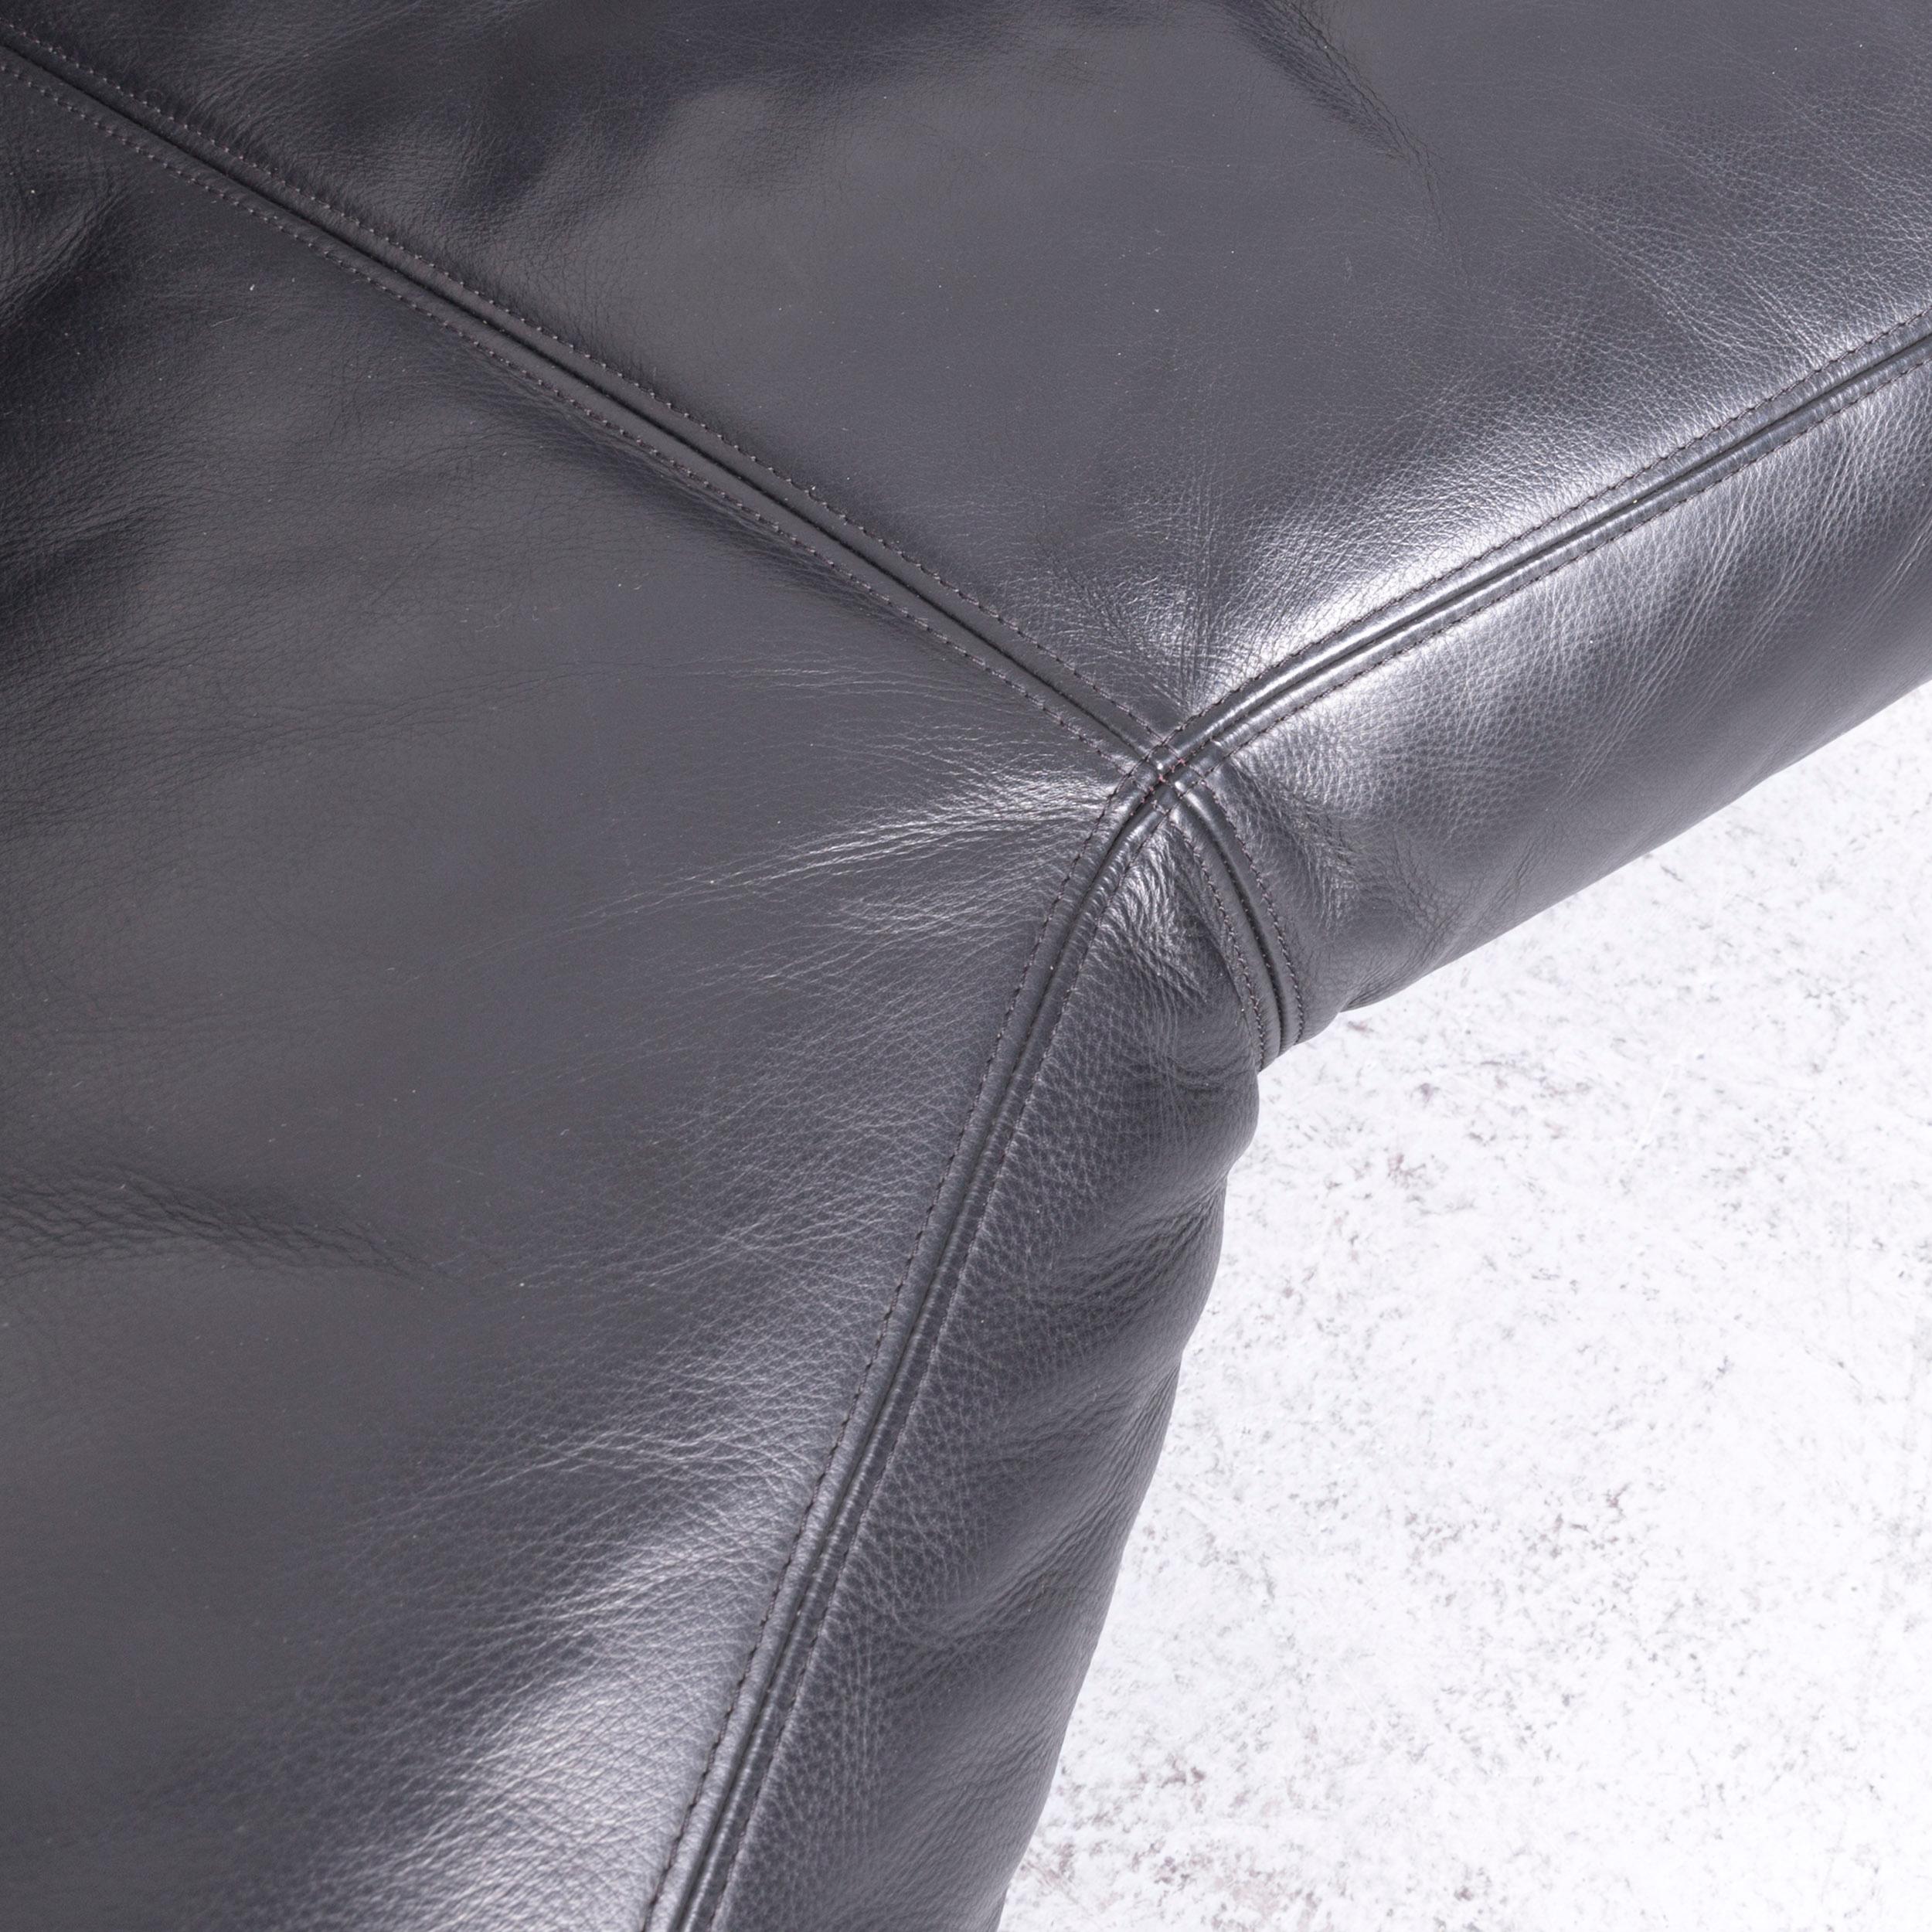 Contemporary Artanova Medea Designer Black Leather Corner Sofa Couch For Sale